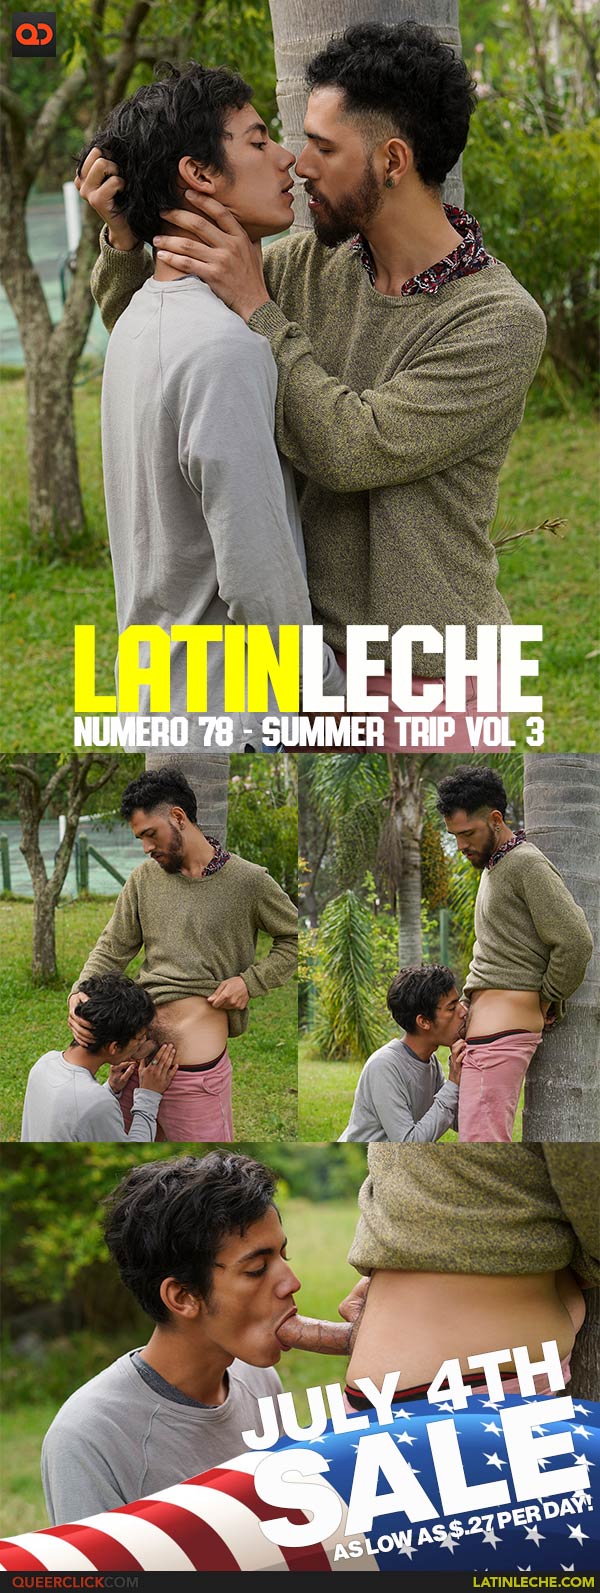 Latin Leche: Numero 78 - Summer Trip Vol 3 JULY 4TH SALE